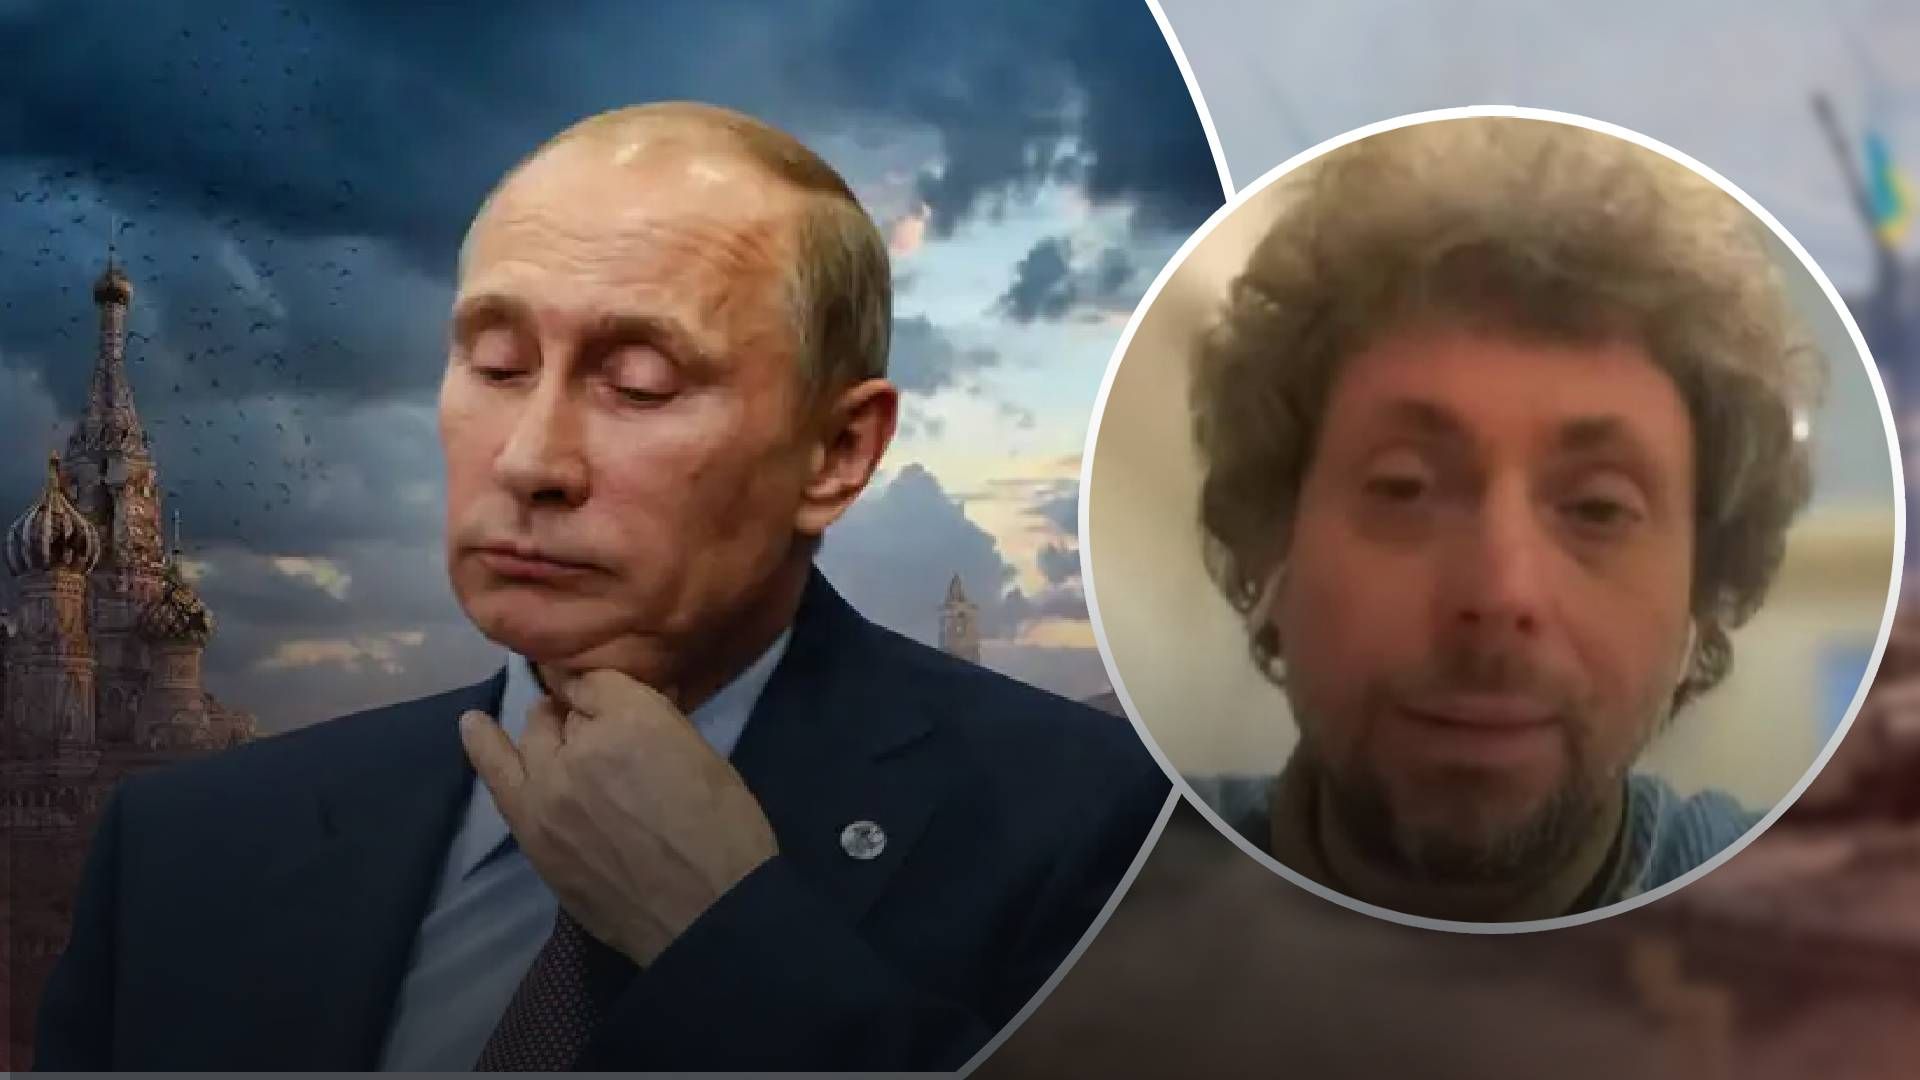 "Он может править еще 10 лет": какие шансы у Путина остаться у власти после военного поражения